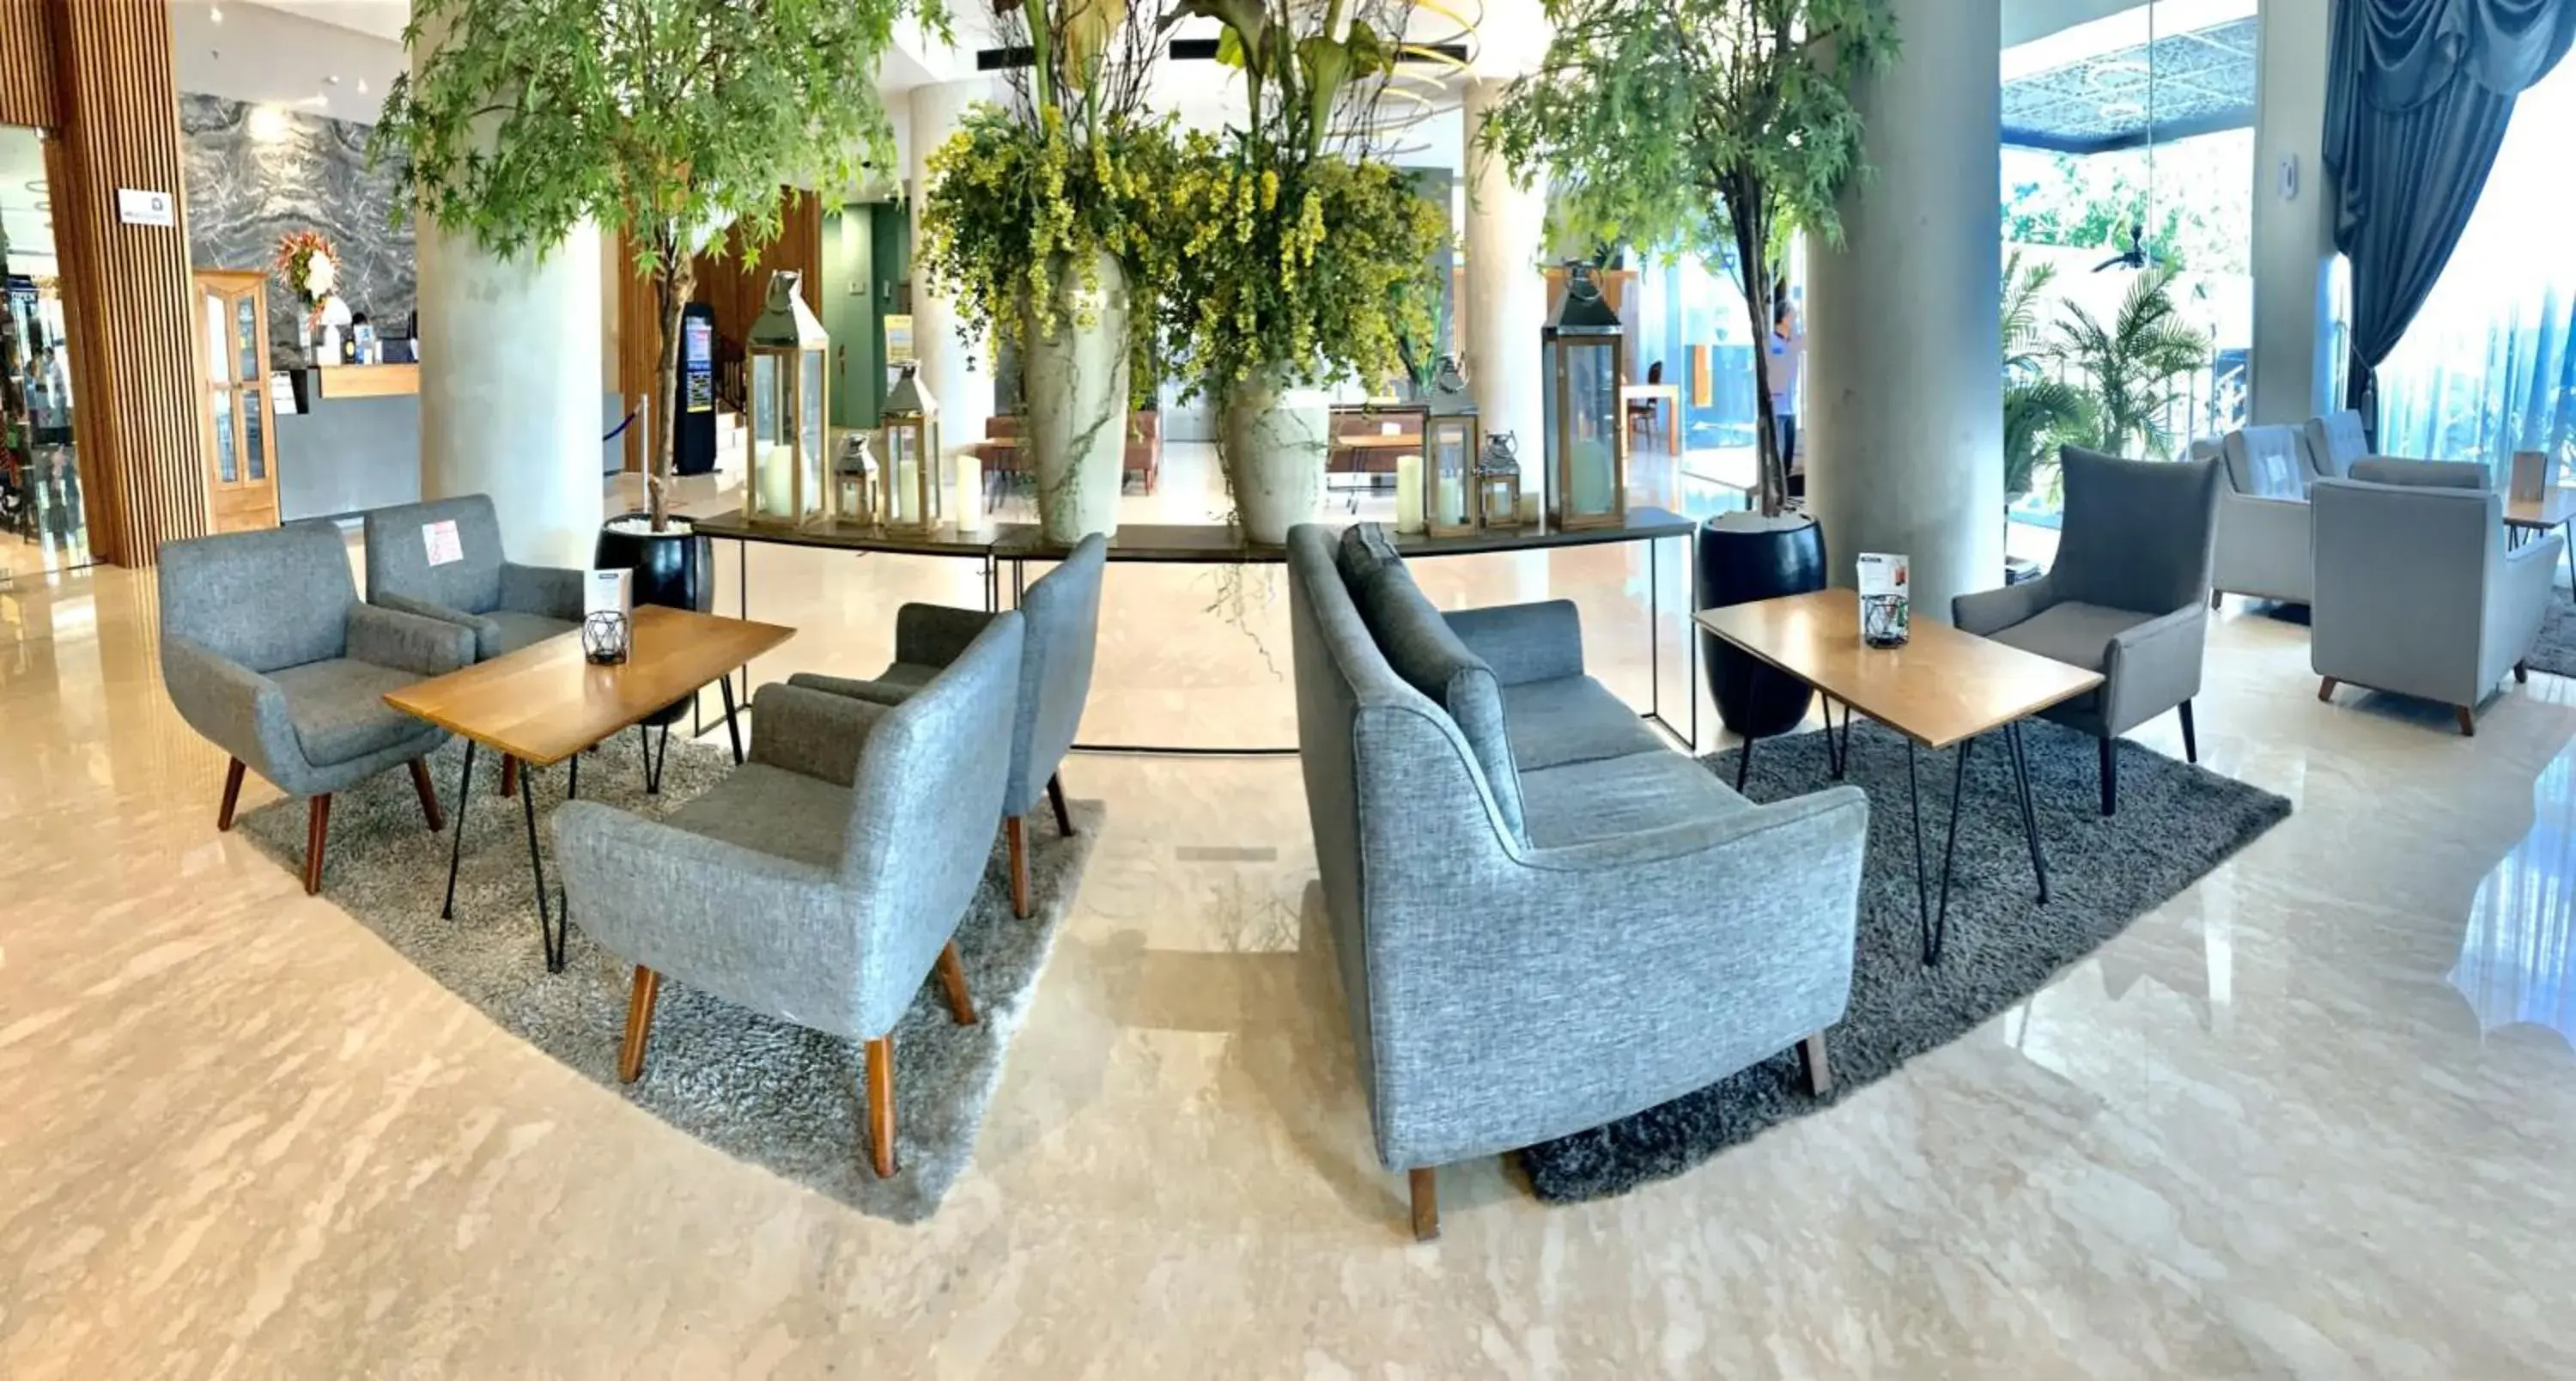 Lobby or reception in KYRIAD HOTEL MURAYA ACEH